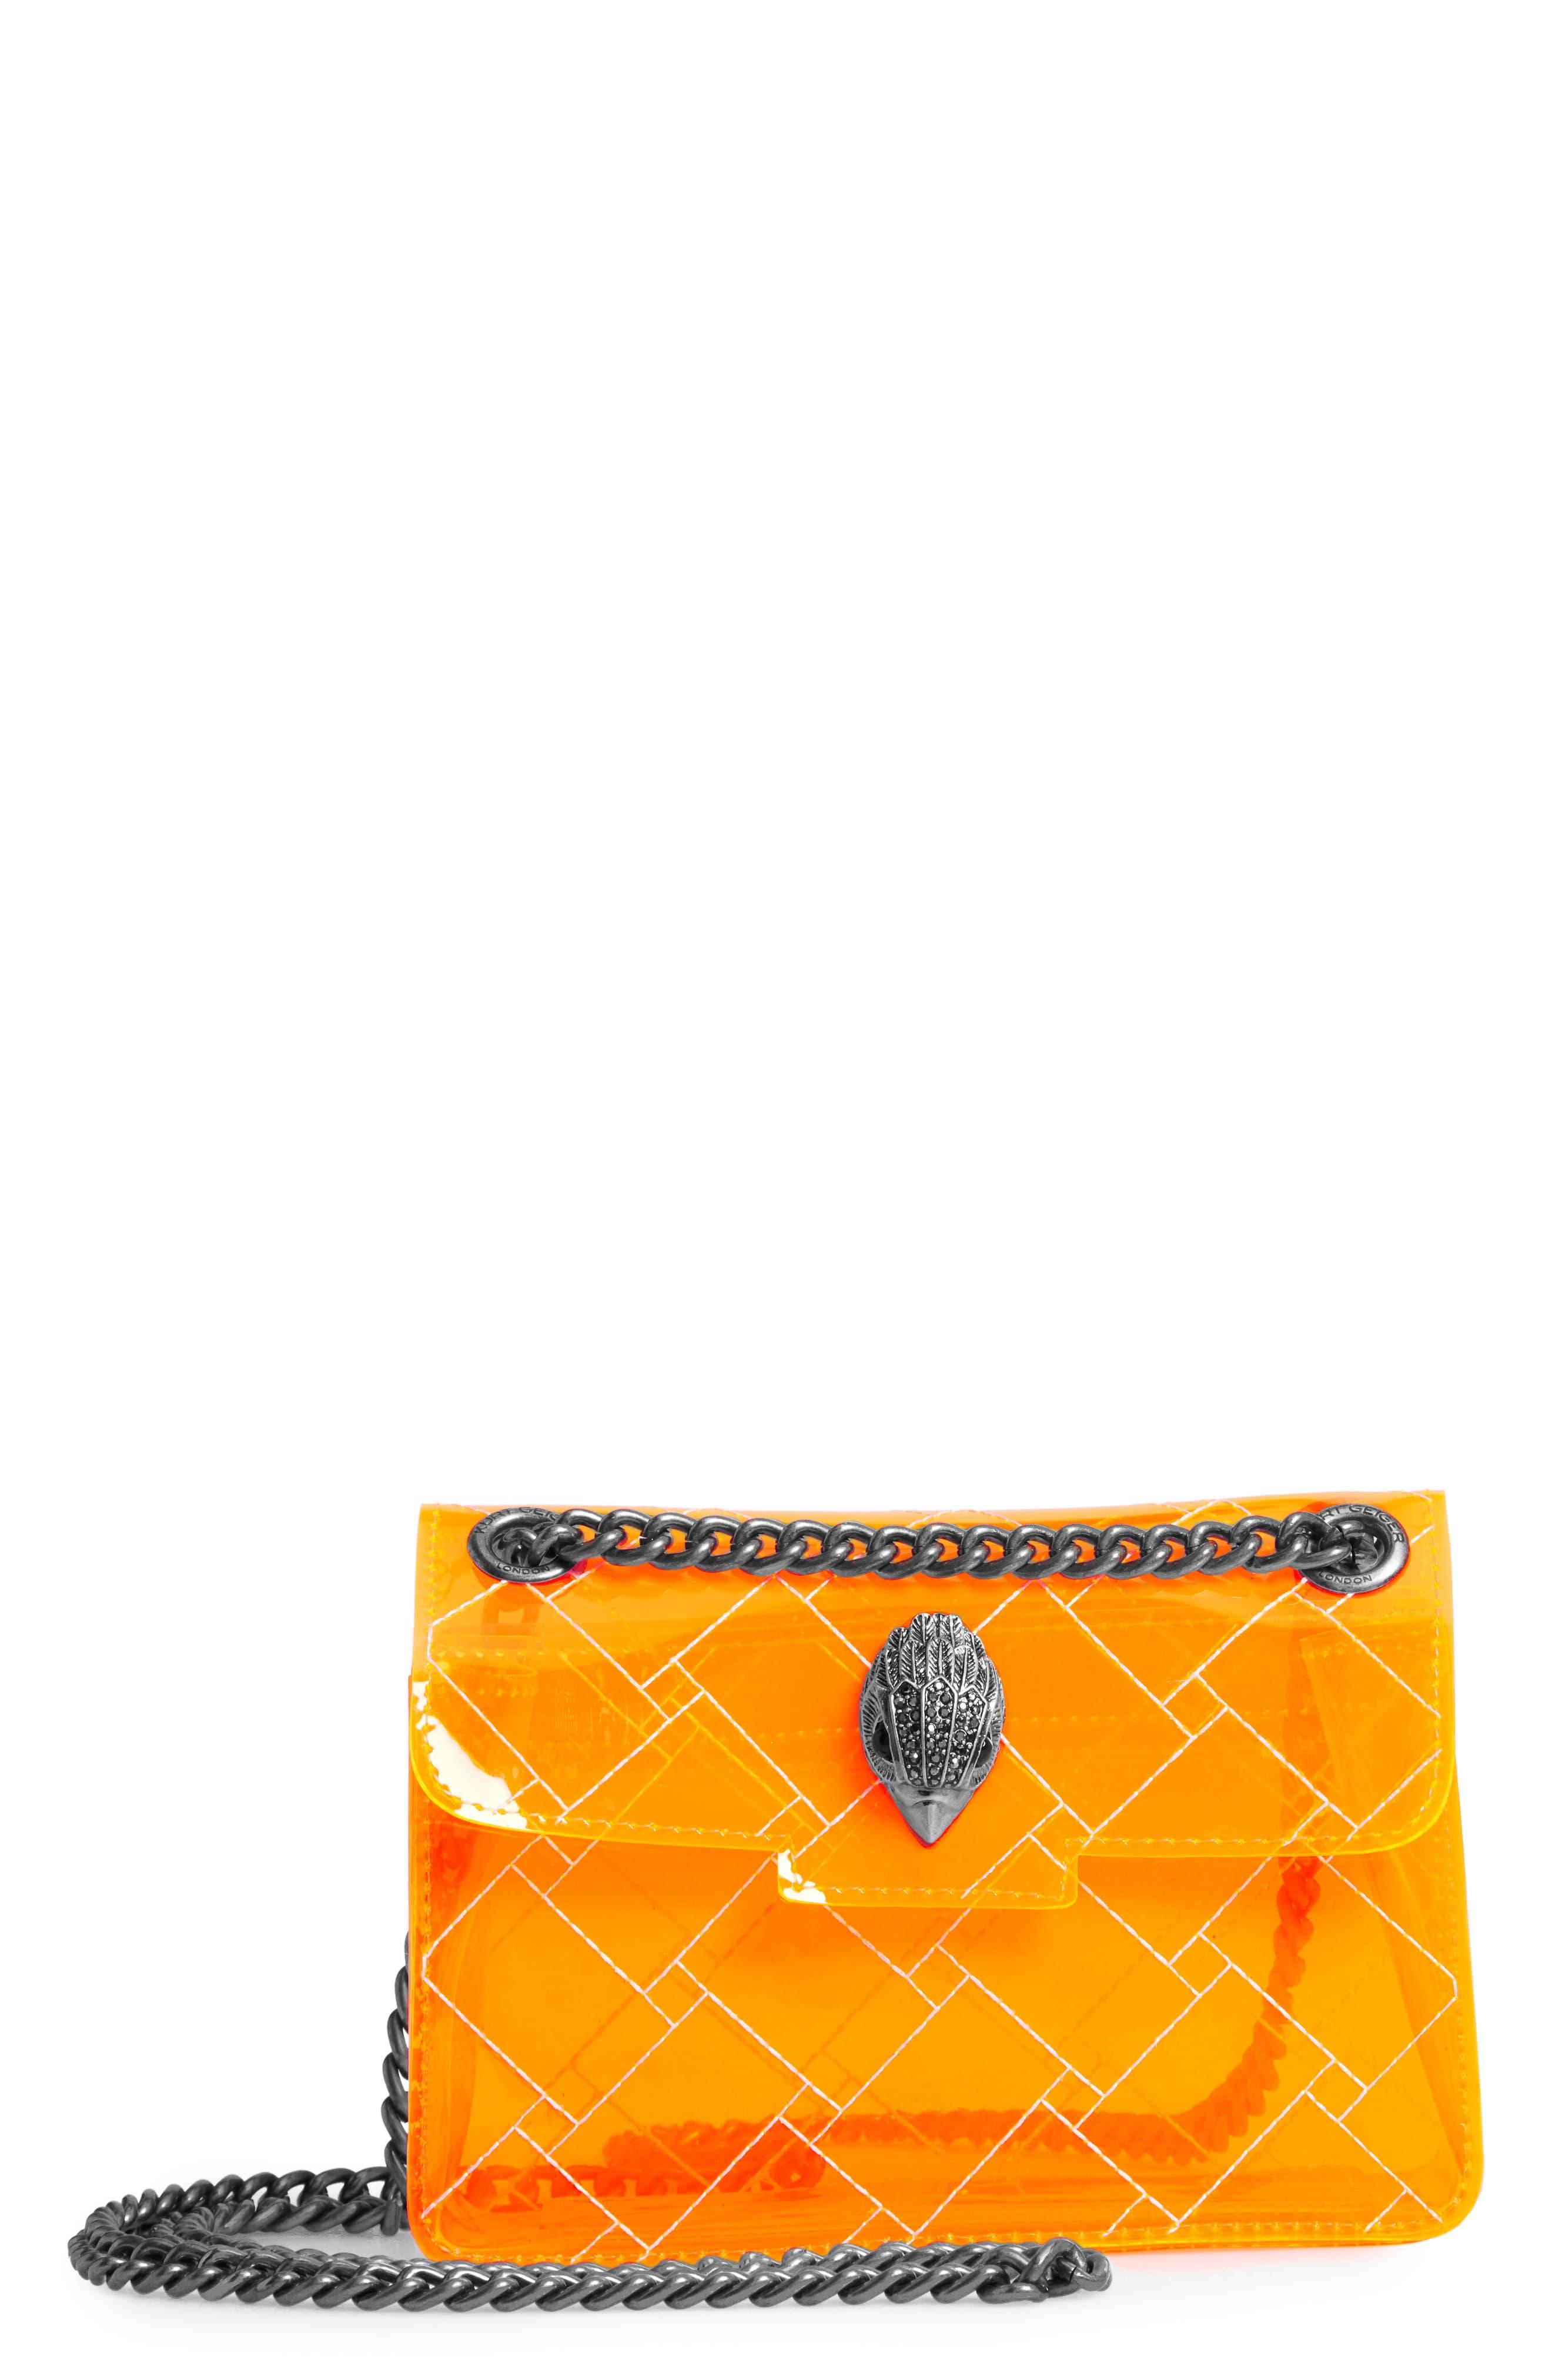 Kurt Geiger Mini Kensington Transparent Shoulder Bag in Orange - Lyst